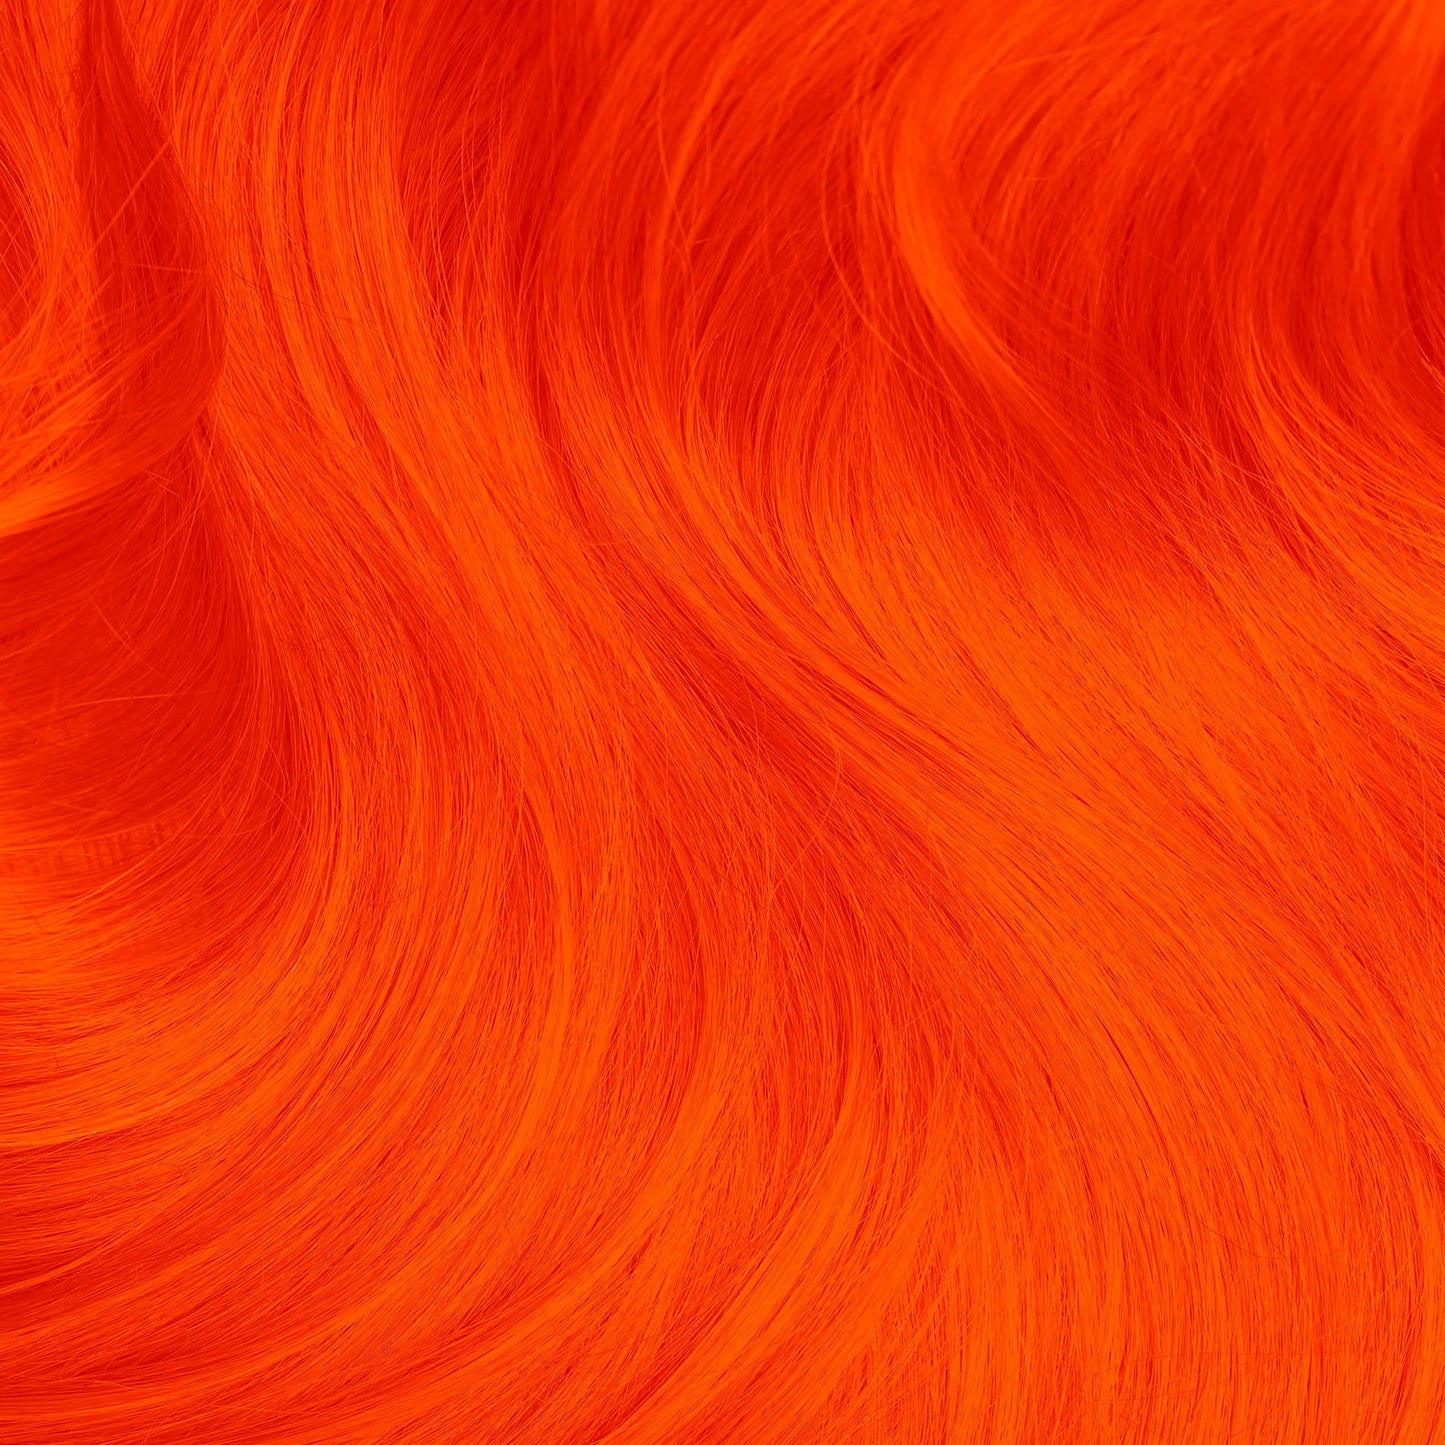 SIAM ORANGE Hair Dye Lunar Tides